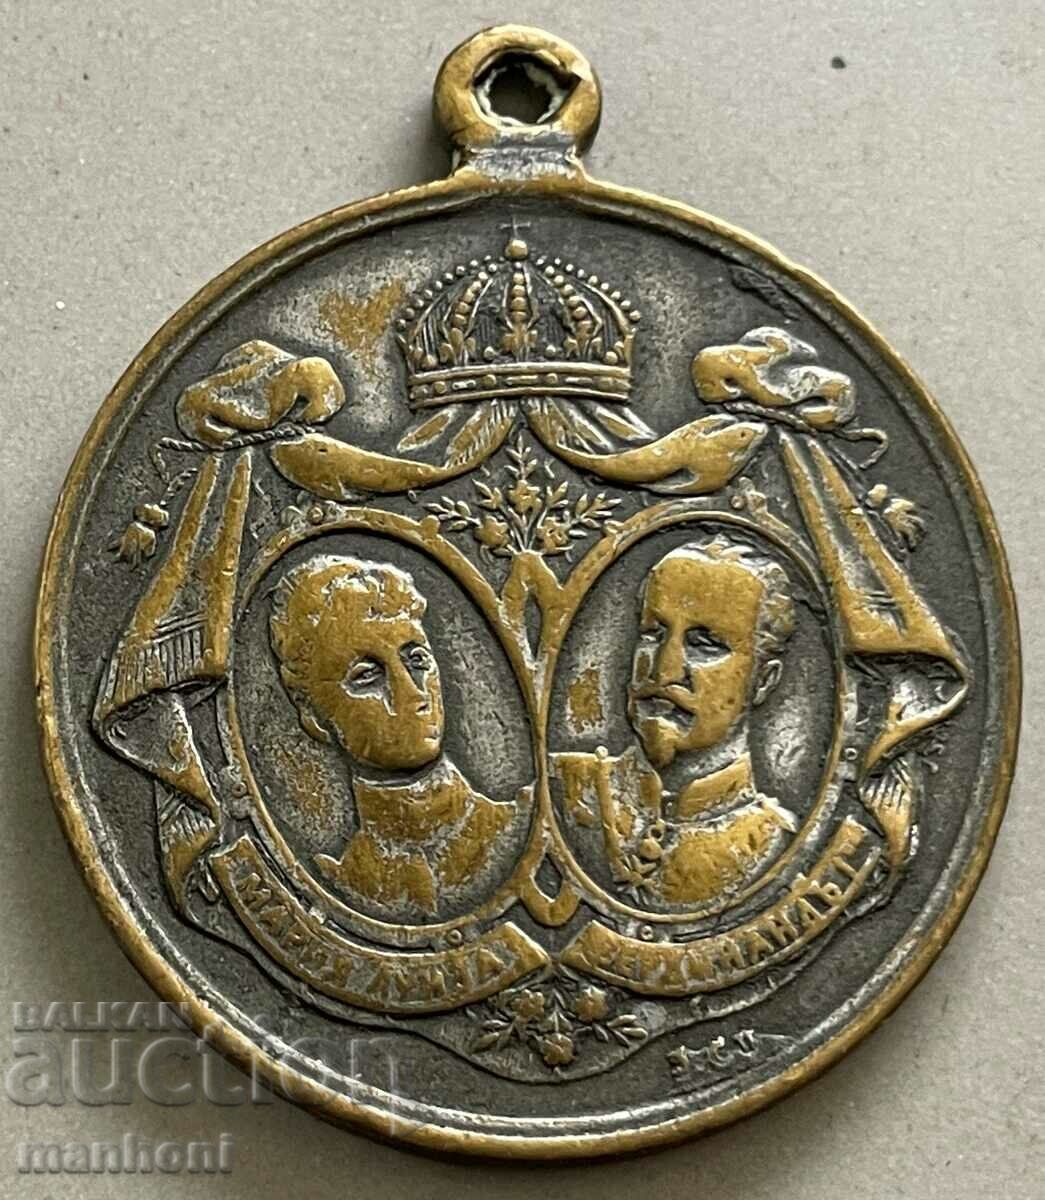 5313 Γάμος μετάλλιο του Πριγκιπάτου της Βουλγαρίας Πρίγκιπας Φερδινάνδος 1893